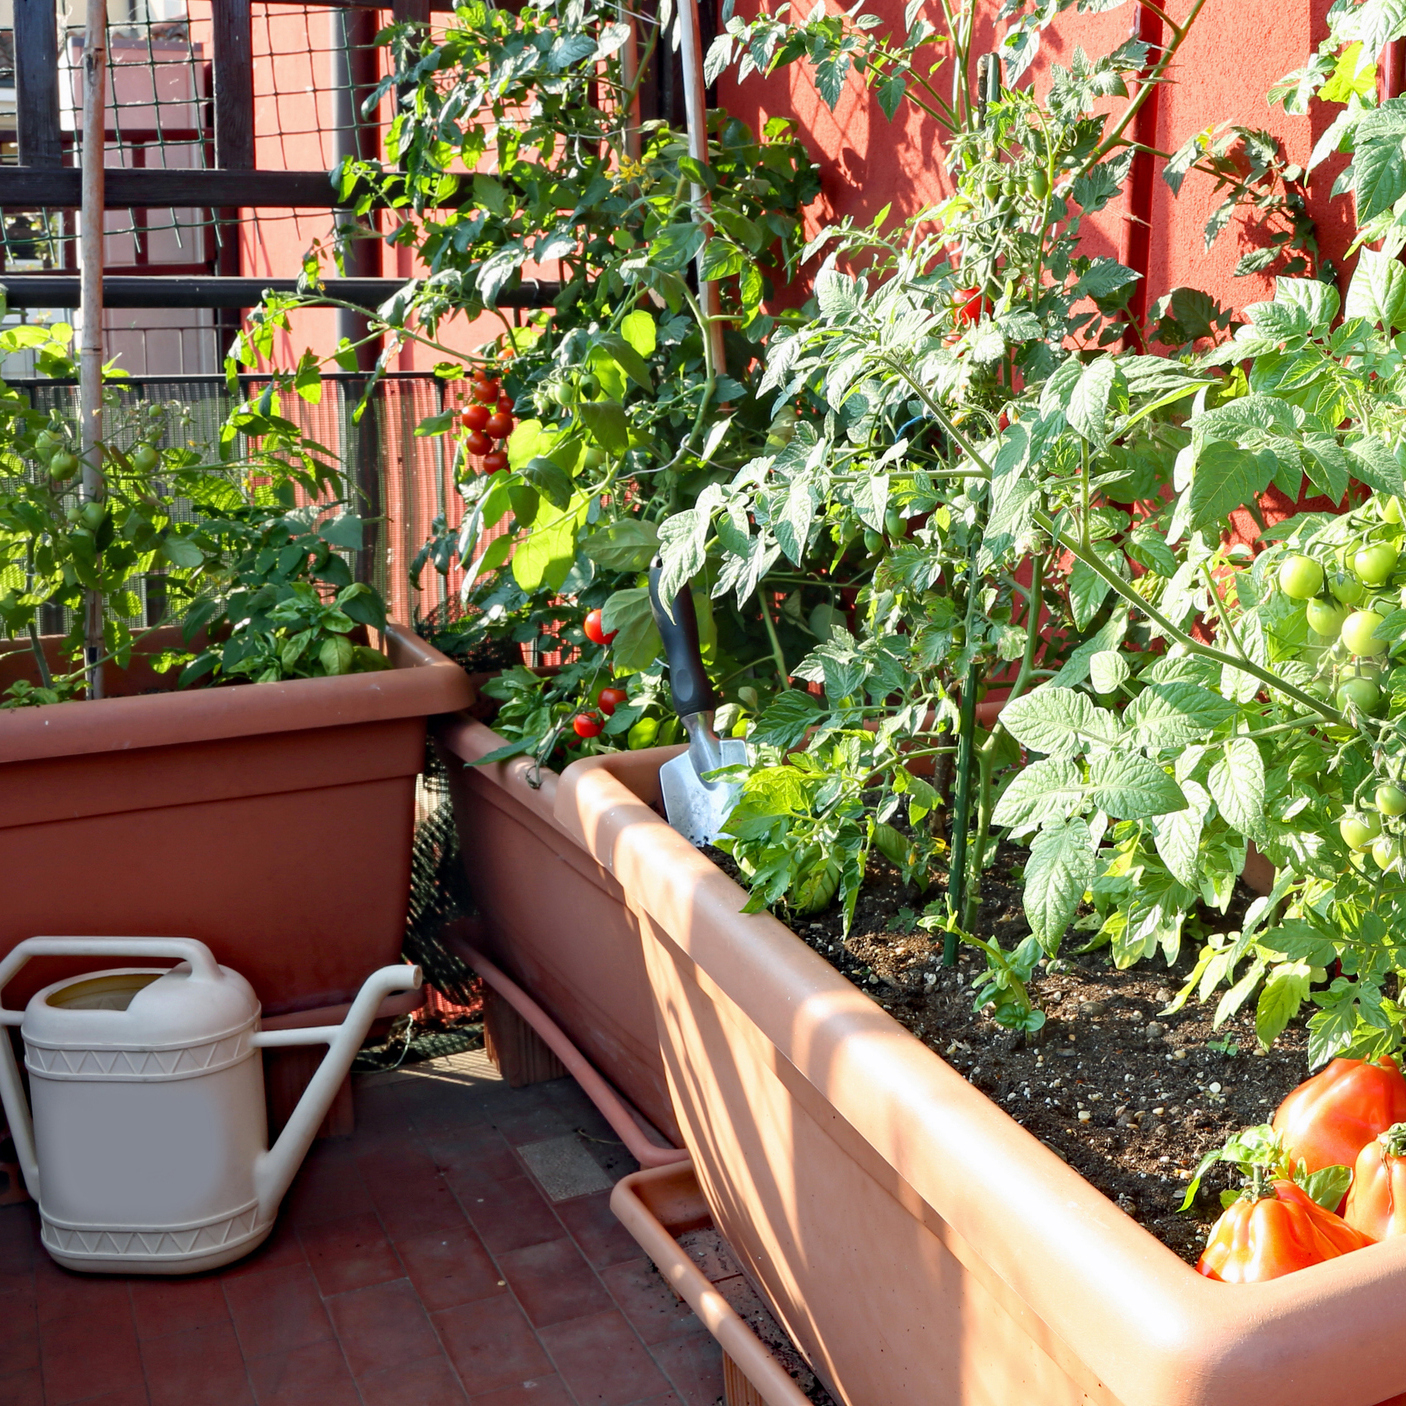 Comment Aménager Un Jardin Potager Sur Son Balcon ? – La ... destiné Aménager Sa Terrasse D'Appartement En Potager